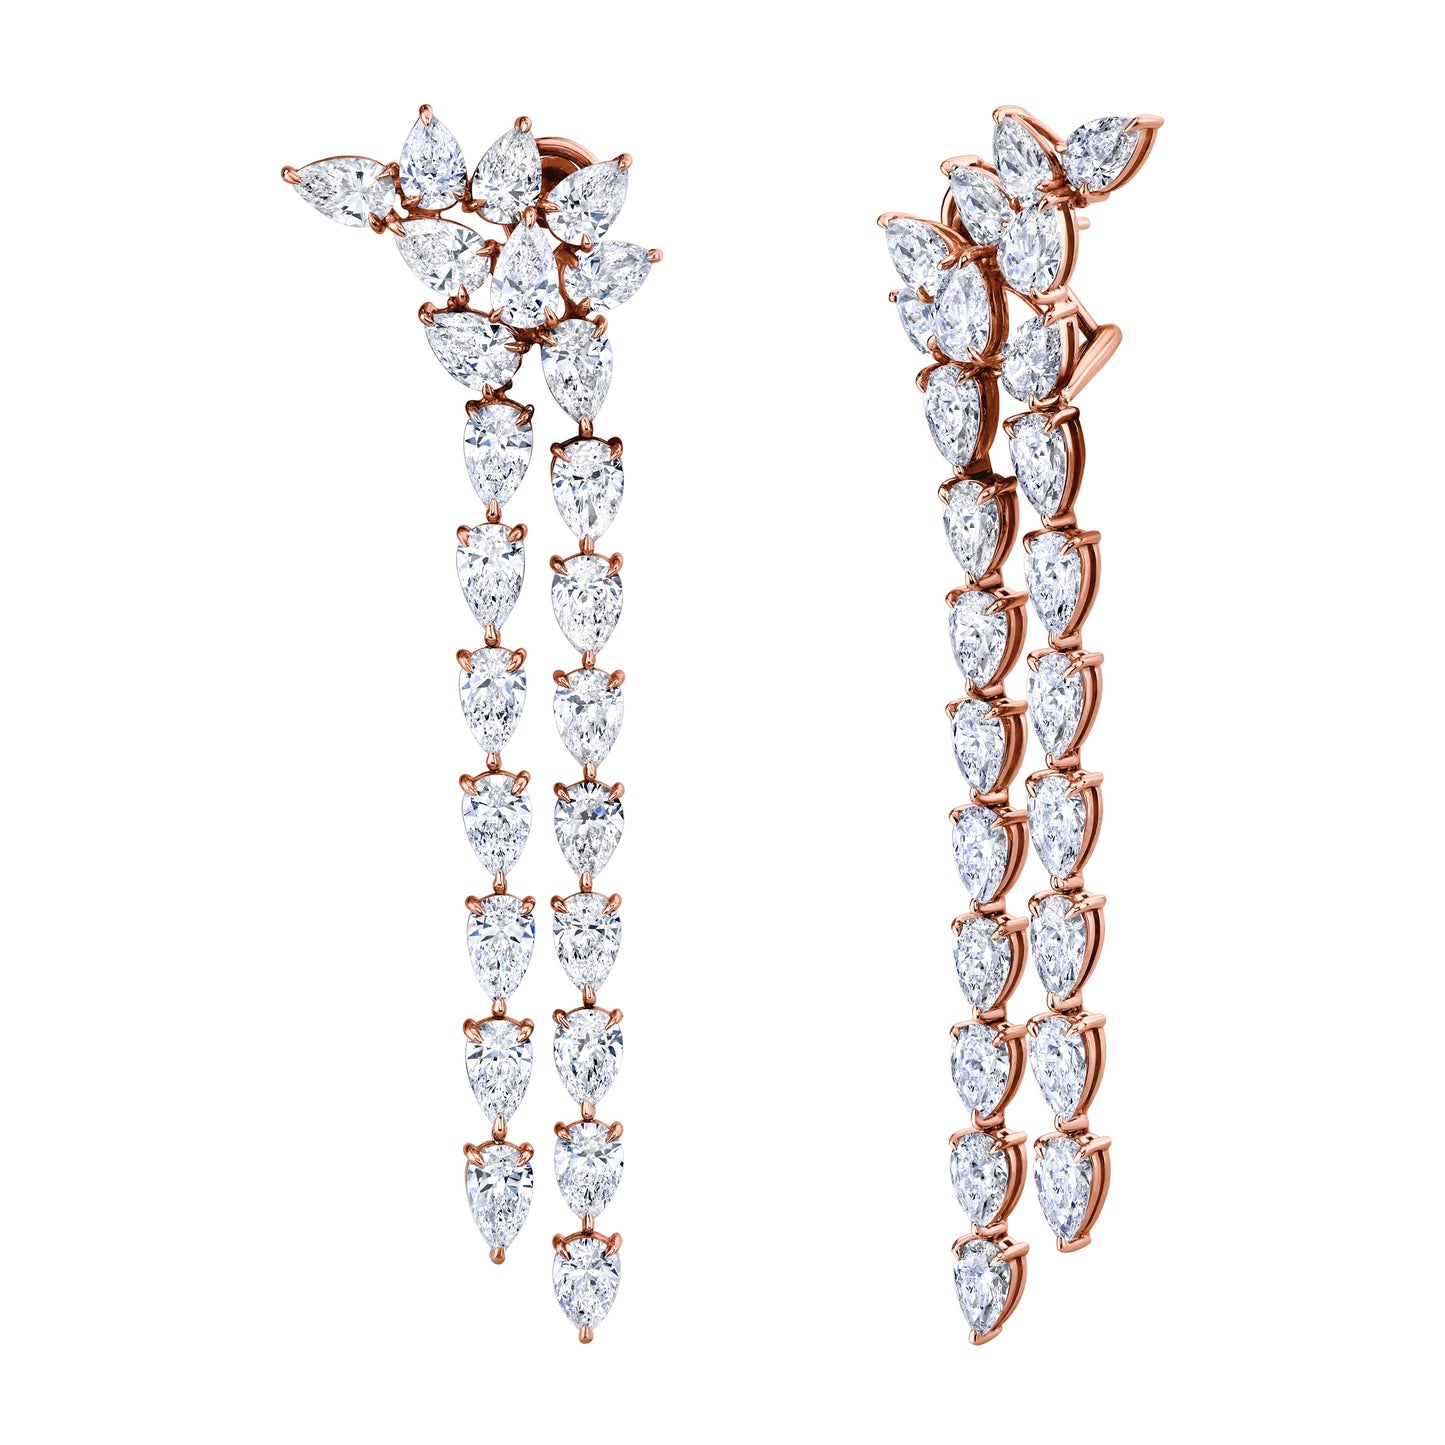 Long Drop Earrings with Pear Shape Diamonds